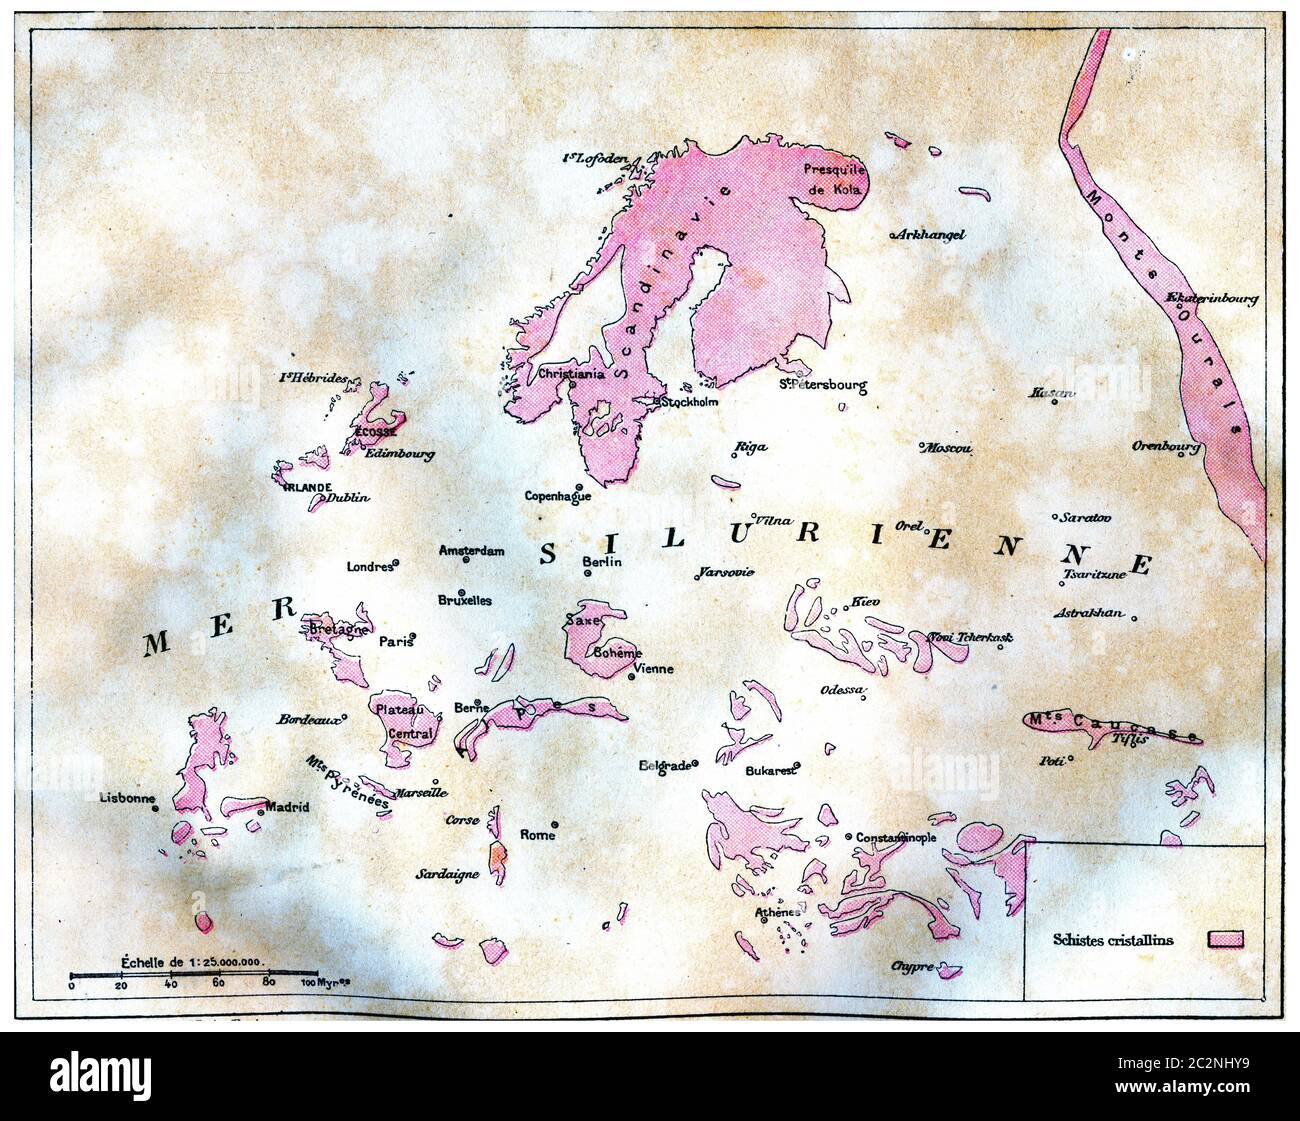 Carte de terre émergée en Europe au temps de la mer silurienne, illustration gravée d'époque. La terre avant l'homme – 1886. Banque D'Images